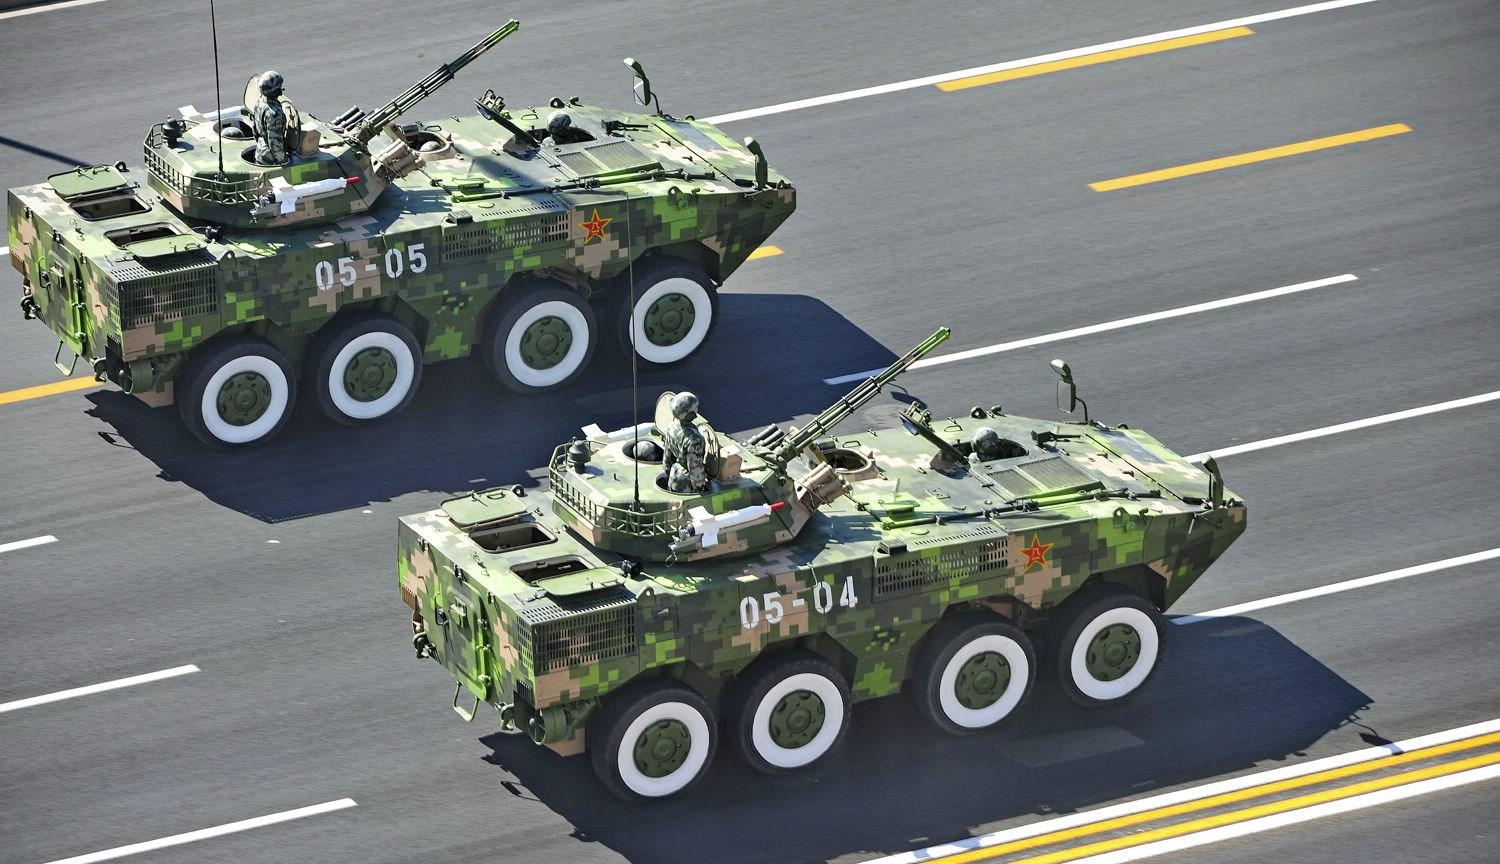 这是设立吉布提保障基地以来,中国军队首次出动8x8轮式装甲车和突击车